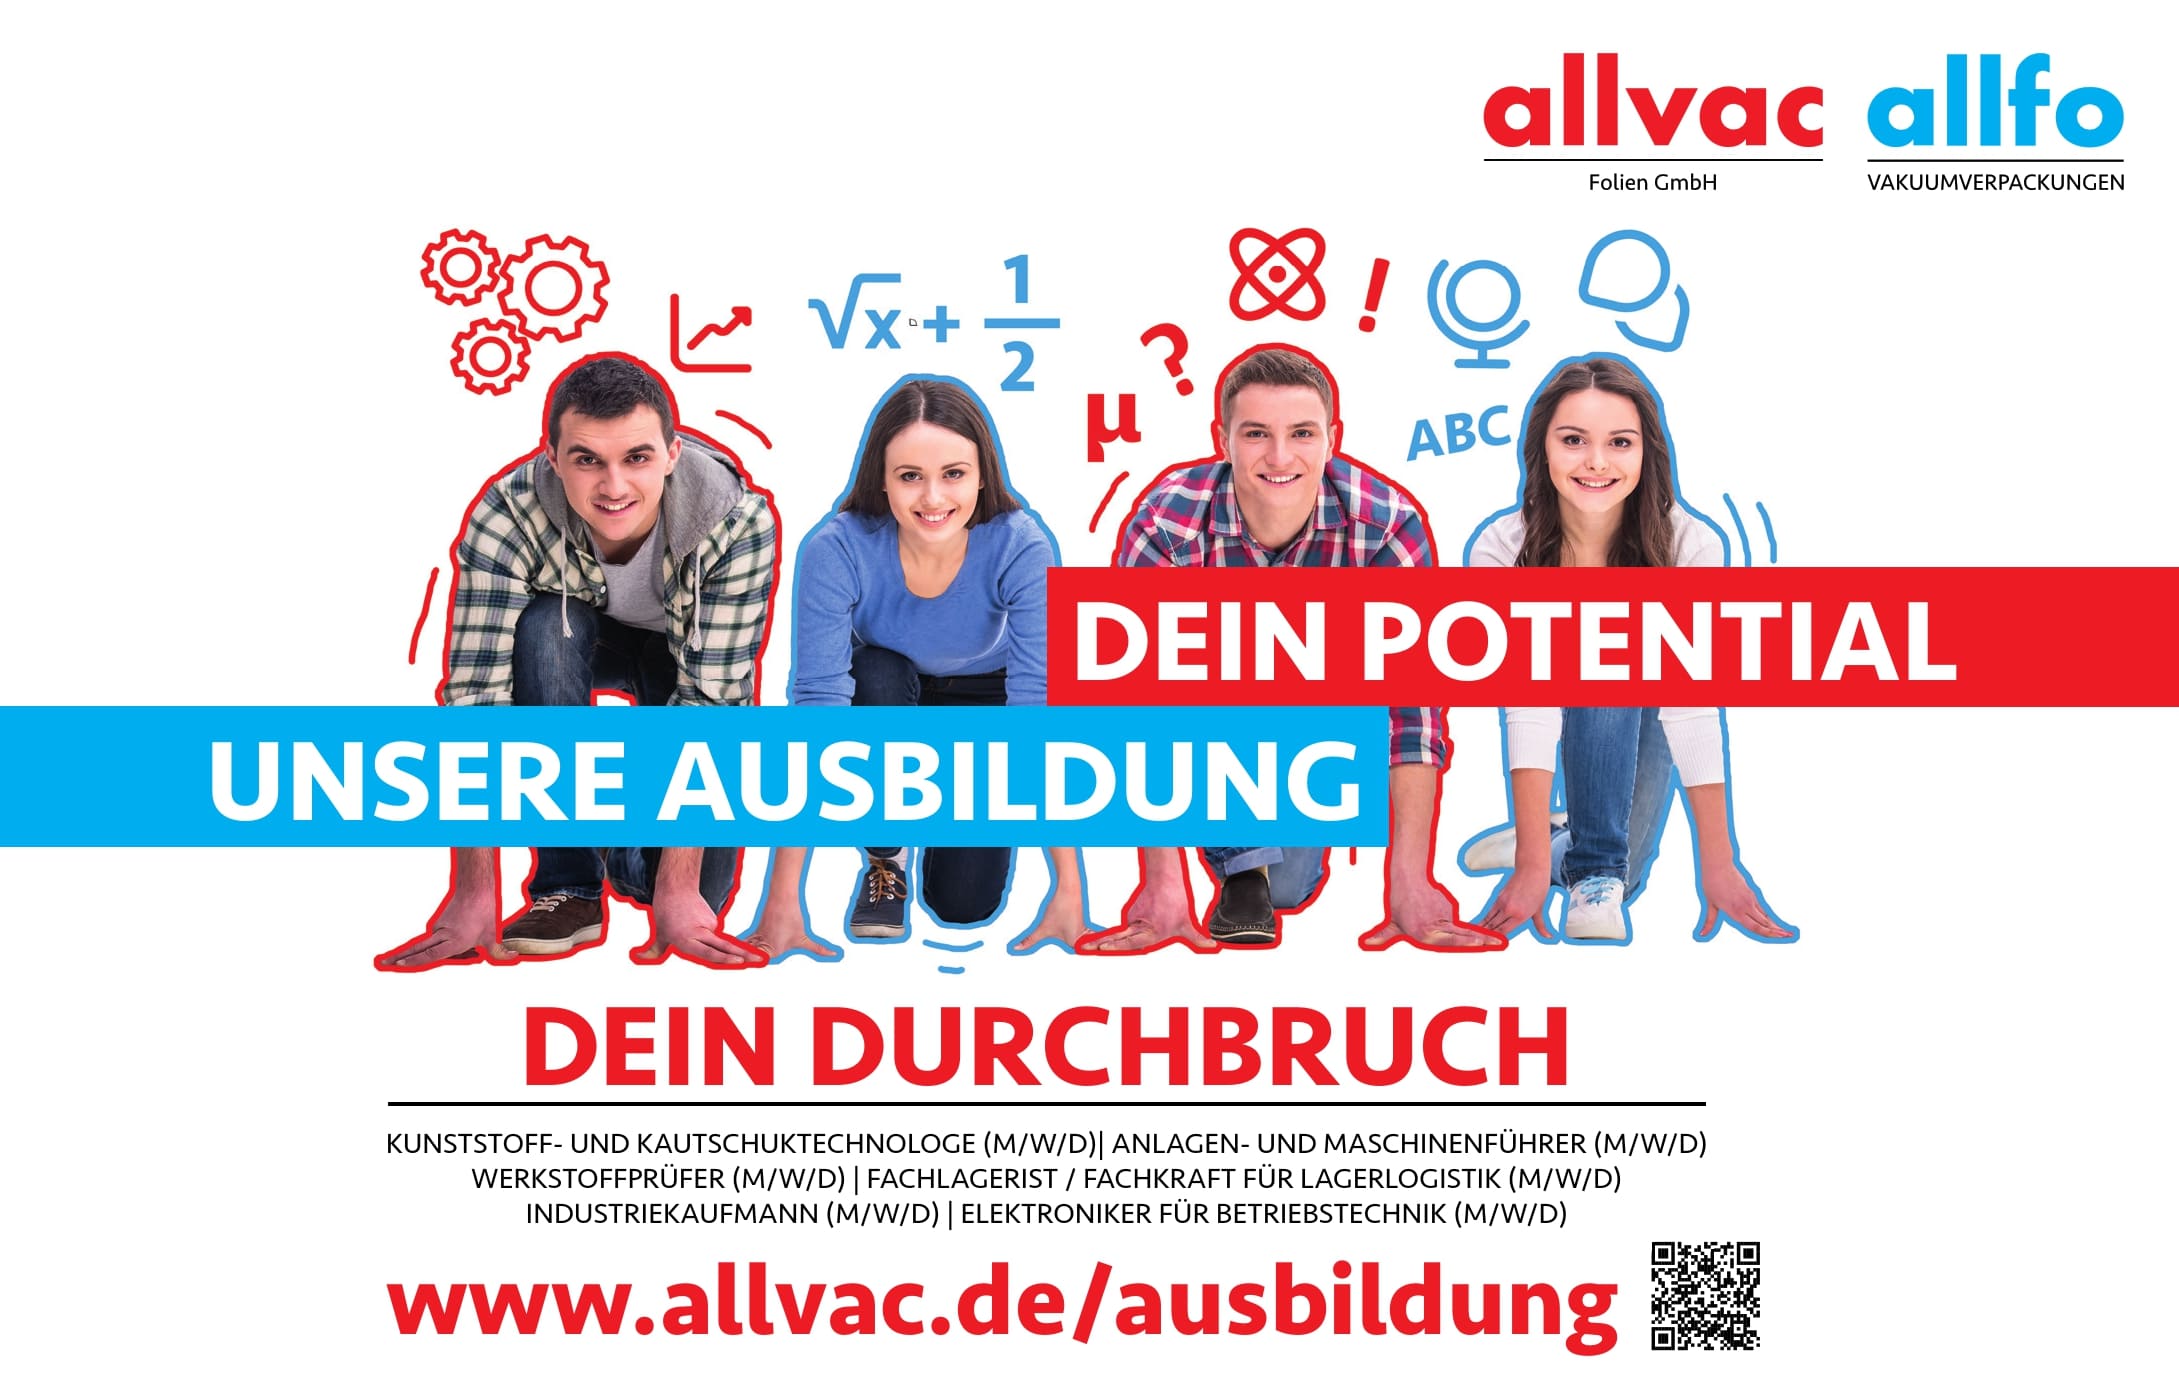 Allvac - Allfo